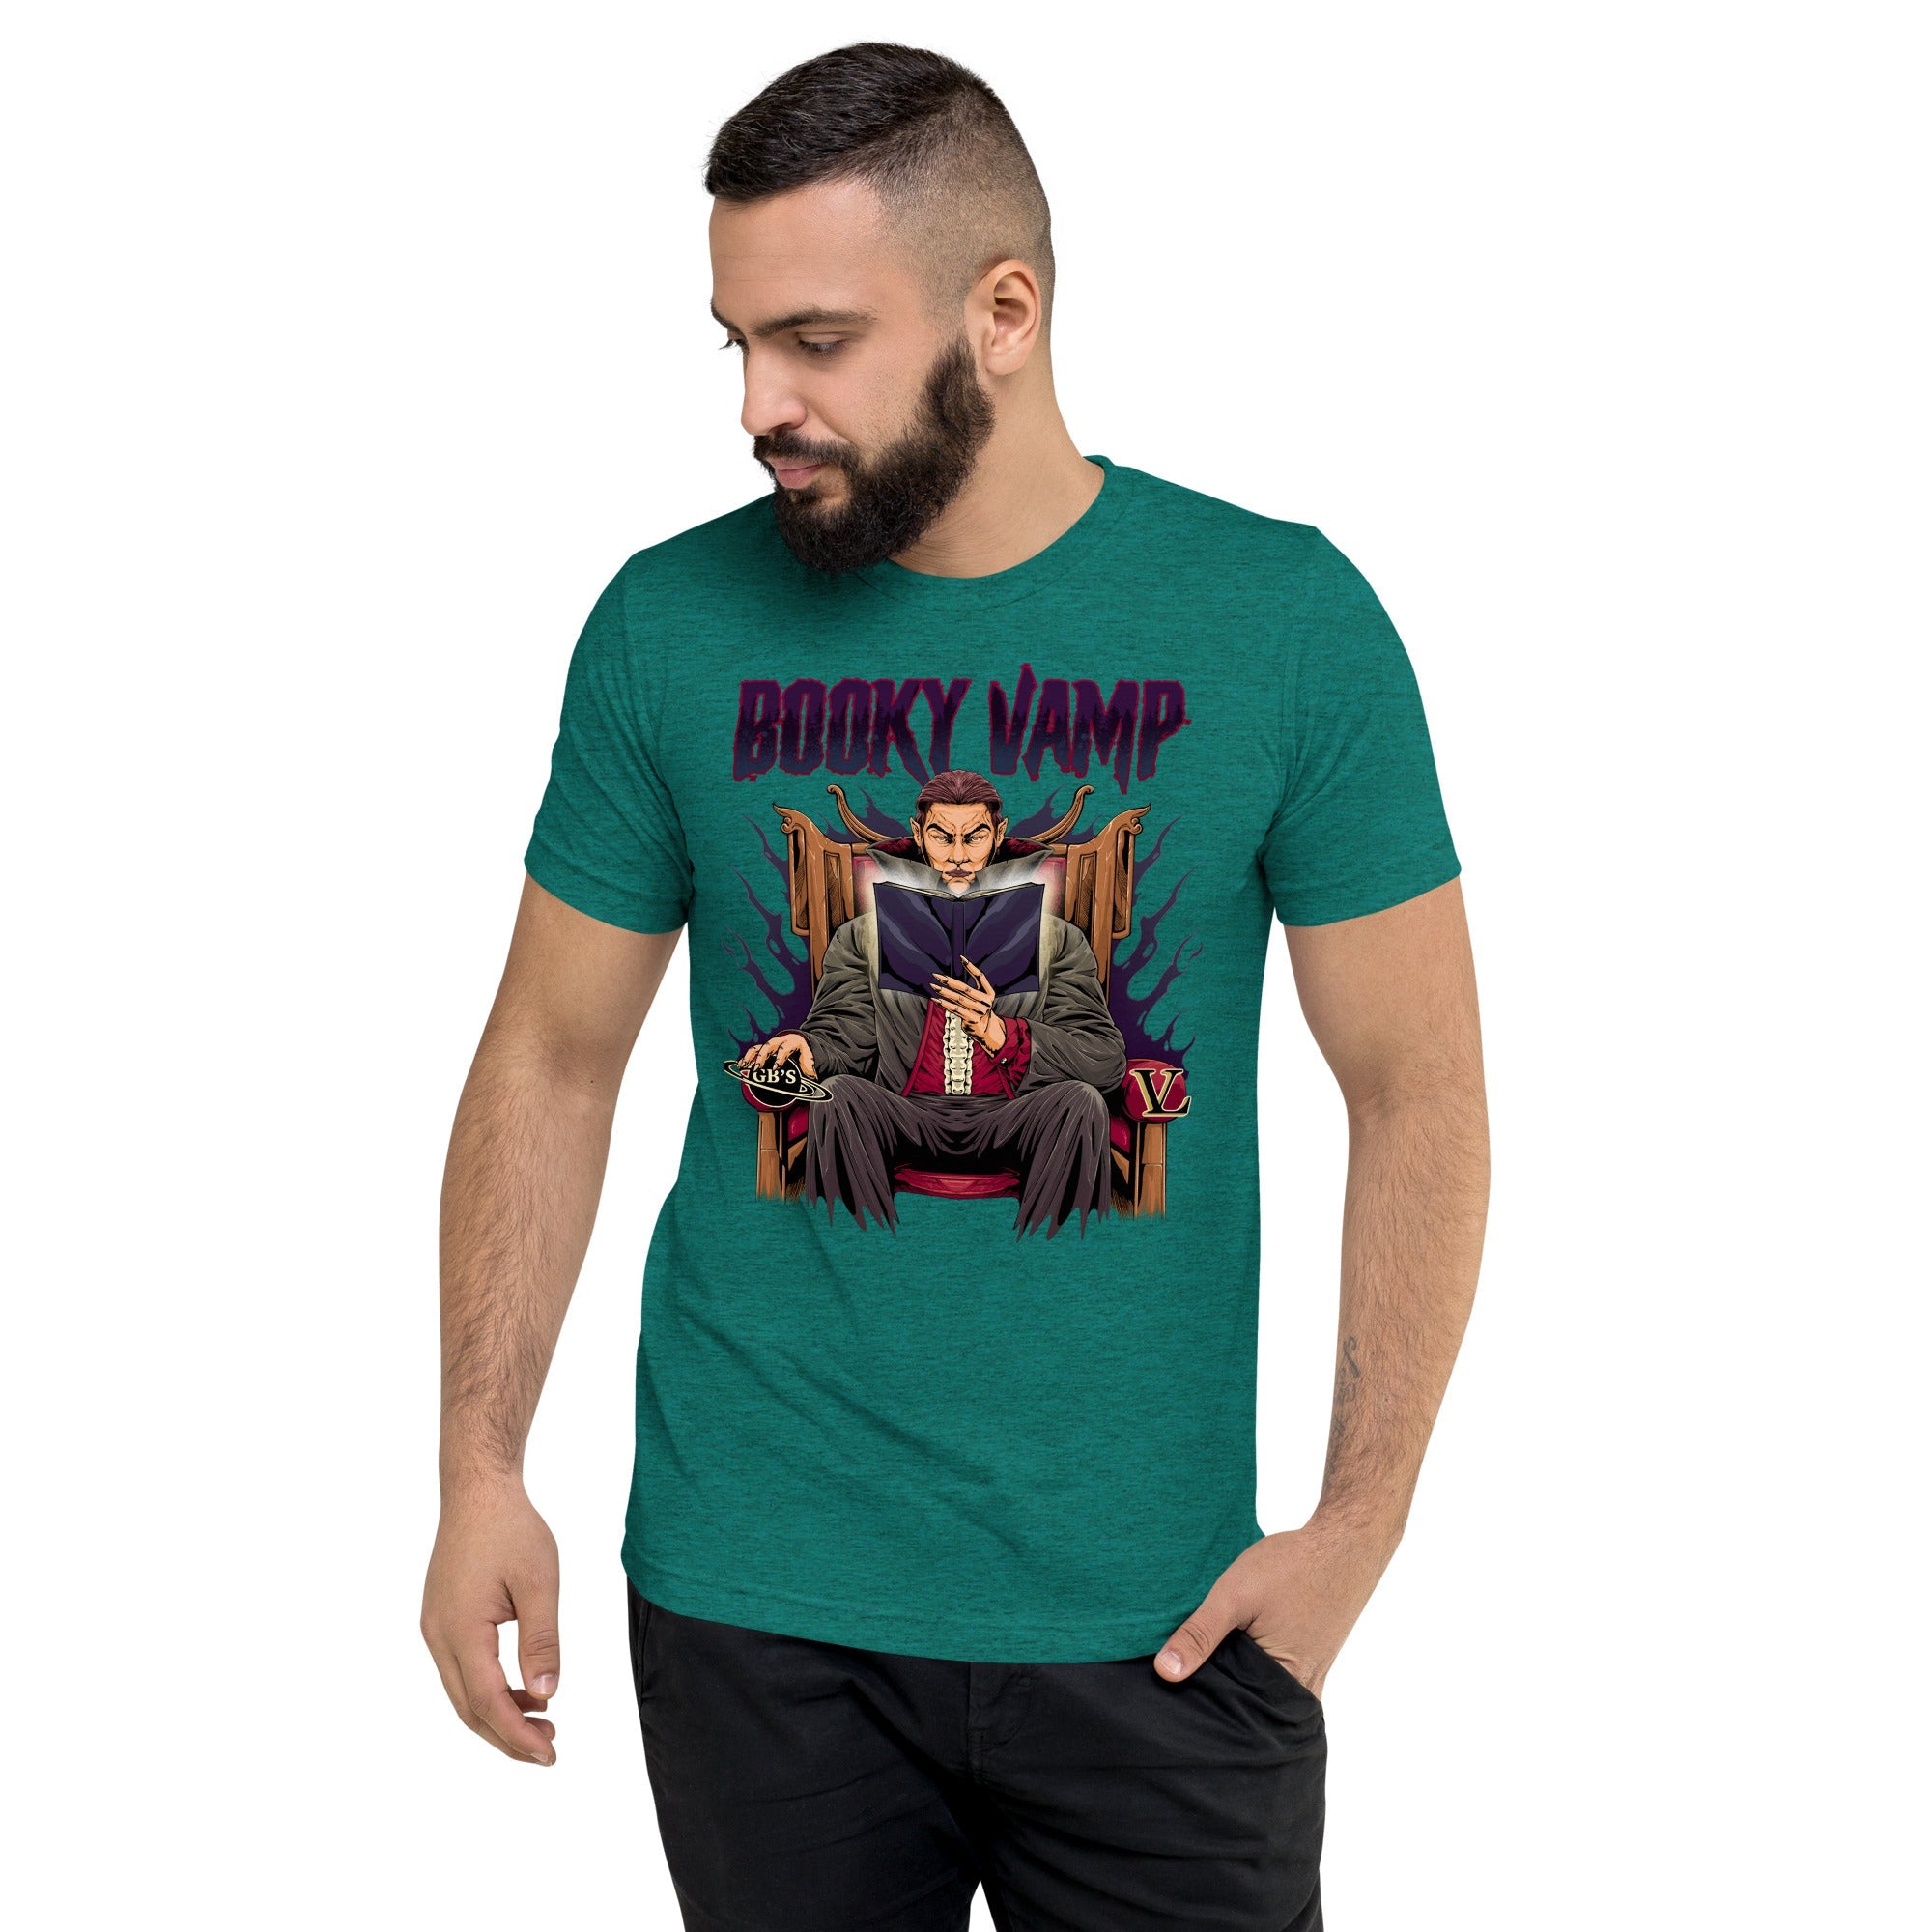 GBNY Teal Triblend / XS Vamp Life X GBNY "Booky Vamp" T-shirt - Men's 2381652_6592